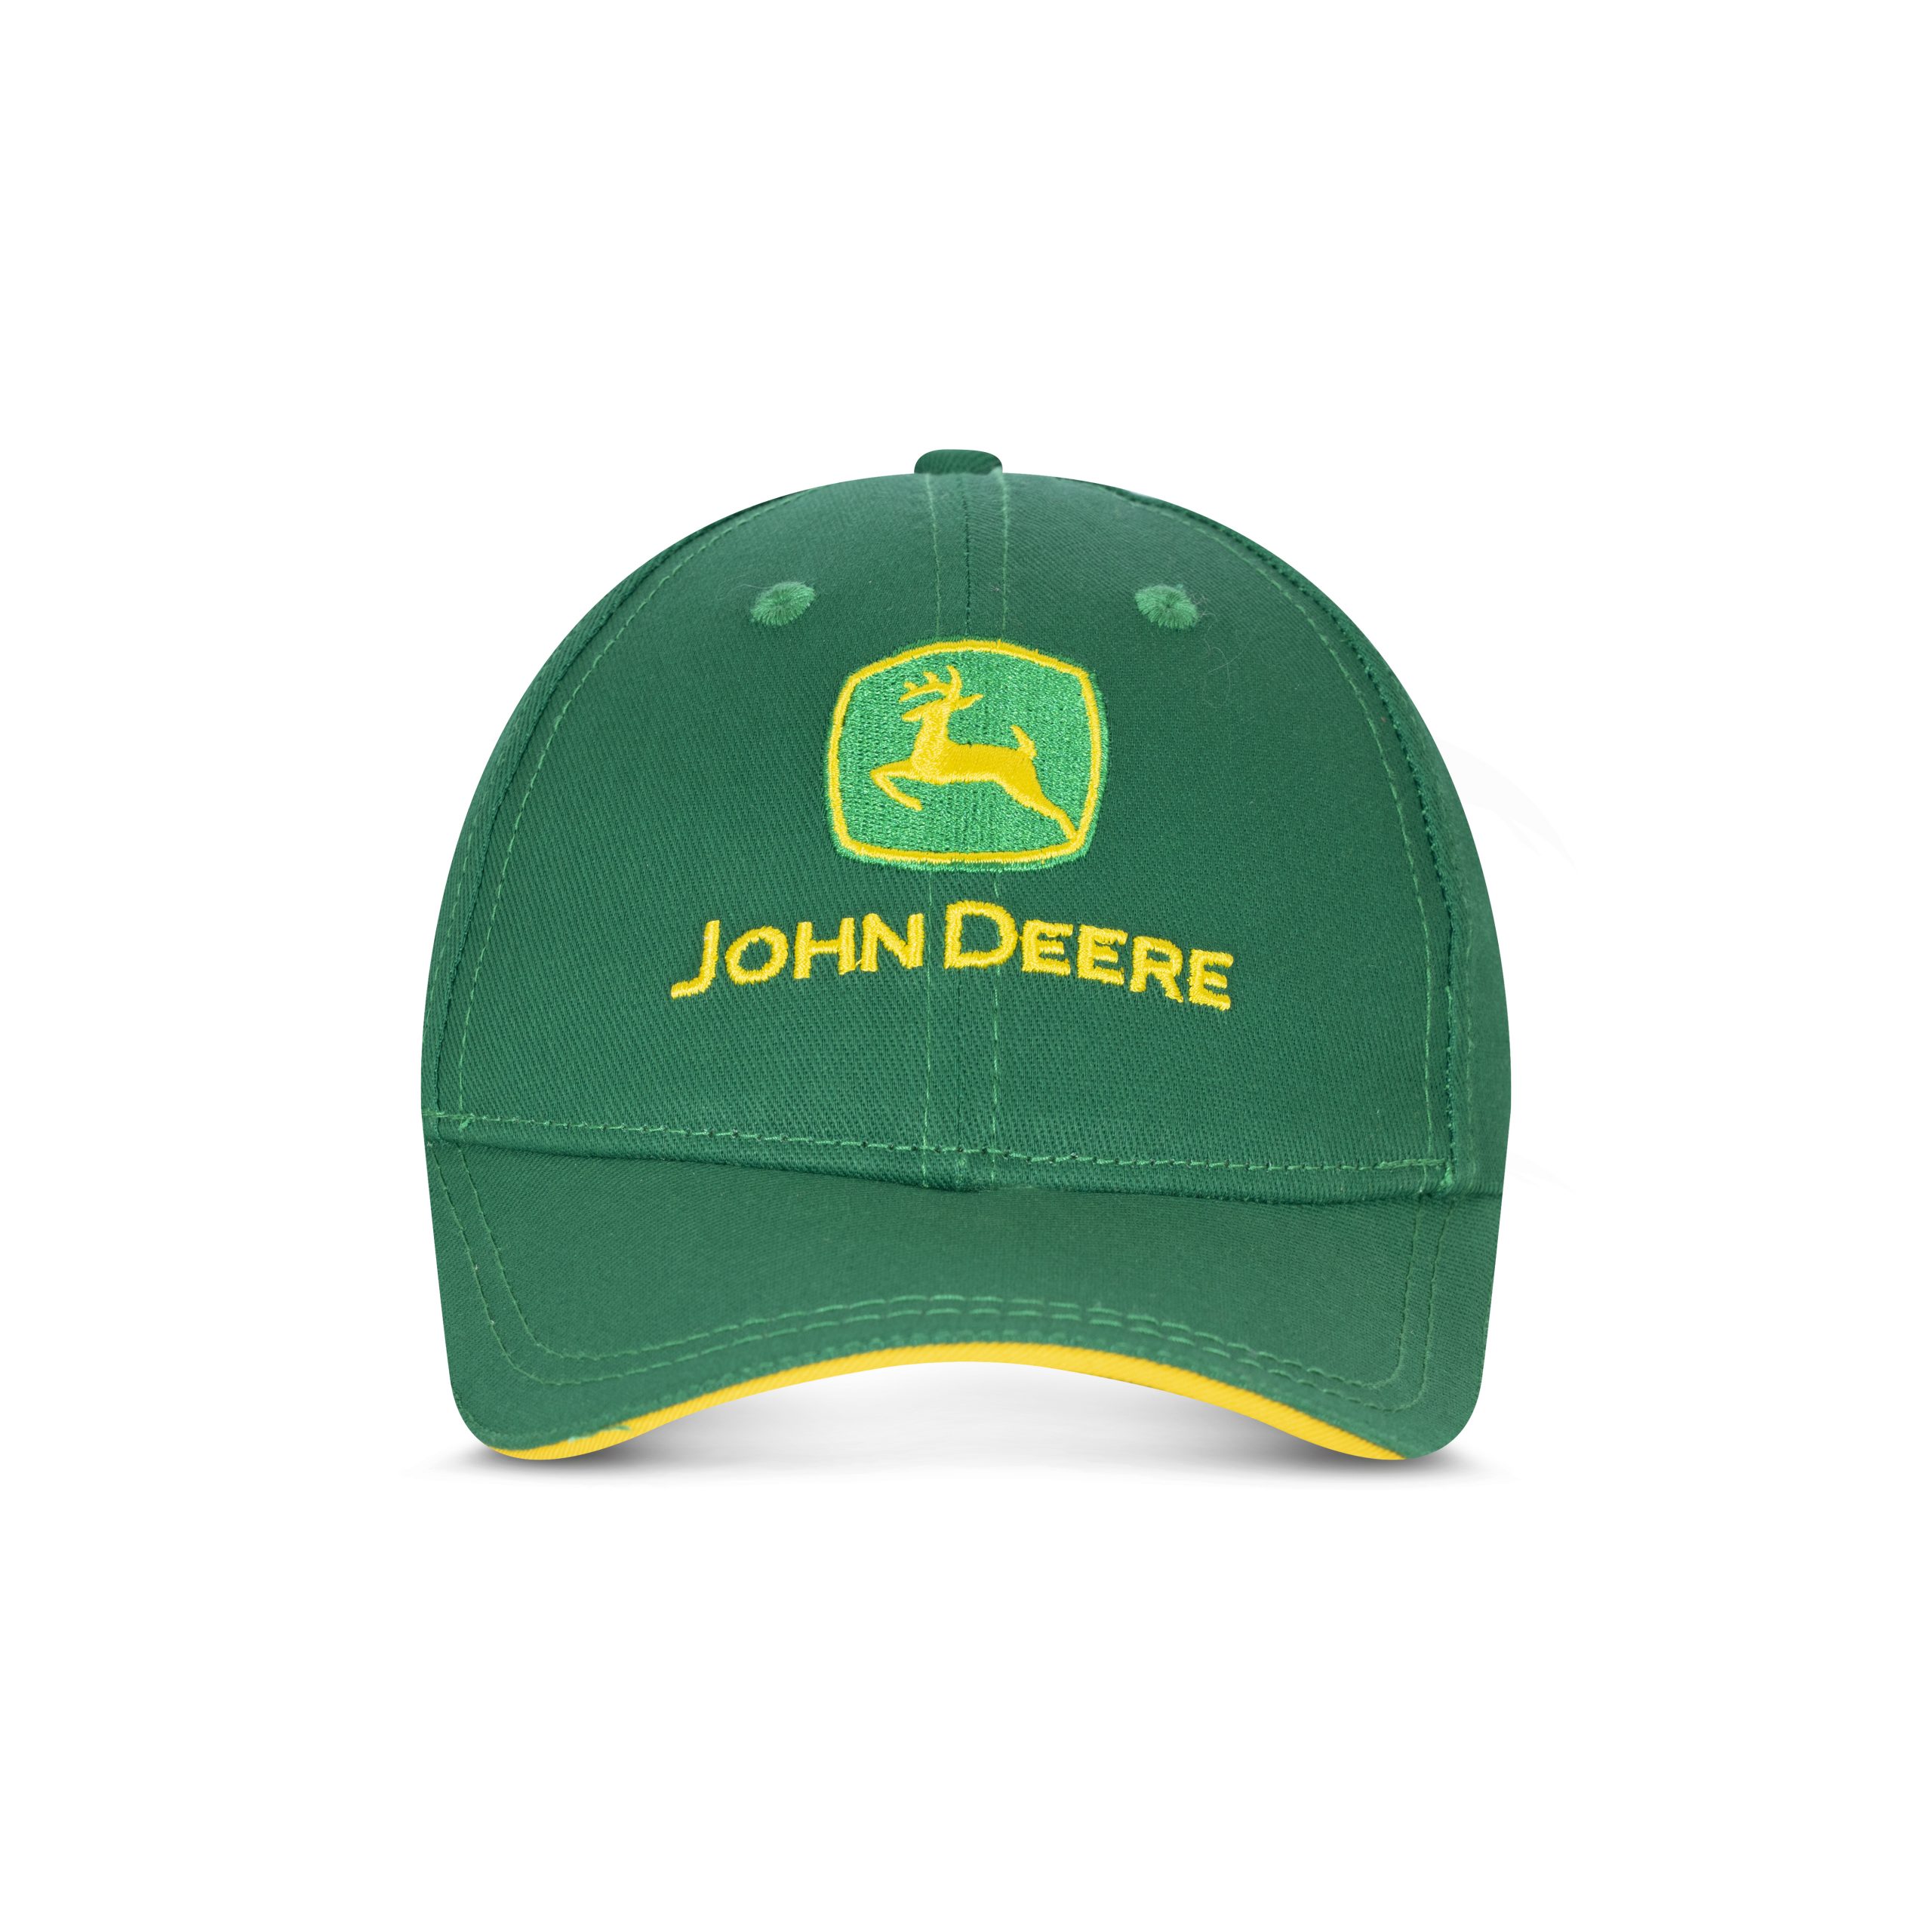 copy of Gorra John Deere Original verde con rejilla amarilla.